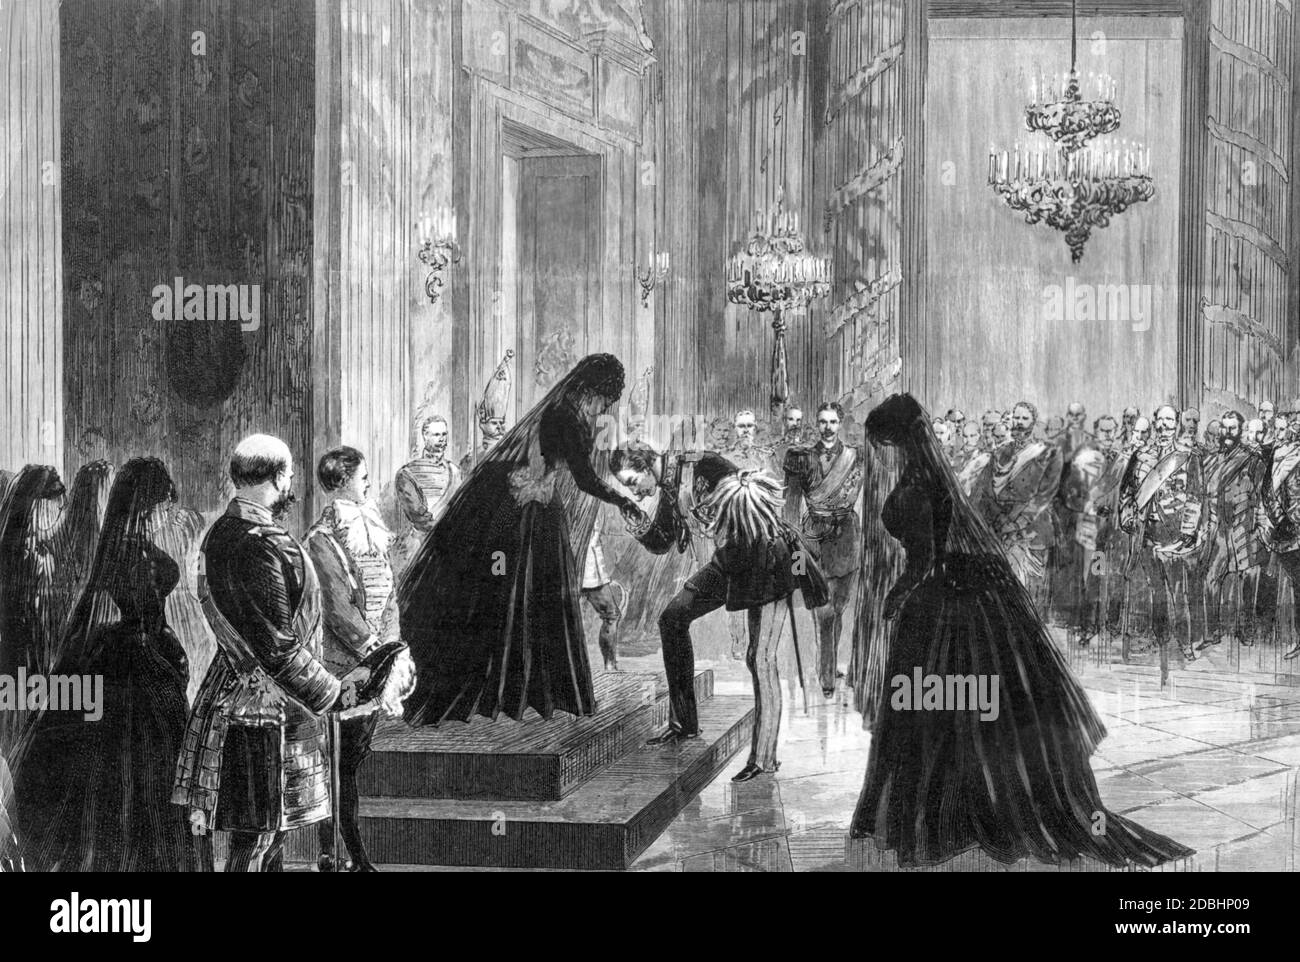 In questo dipinto l'imperatore Guglielmo II (al centro) bacia la mano della madre, l'imperatrice Victoria (nata da Gran Bretagna e Irlanda). Il dipinto rappresenta presumibilmente il servizio funebre per il defunto imperatore Friedrich III nel giugno 1888 a Potsdam. Foto Stock